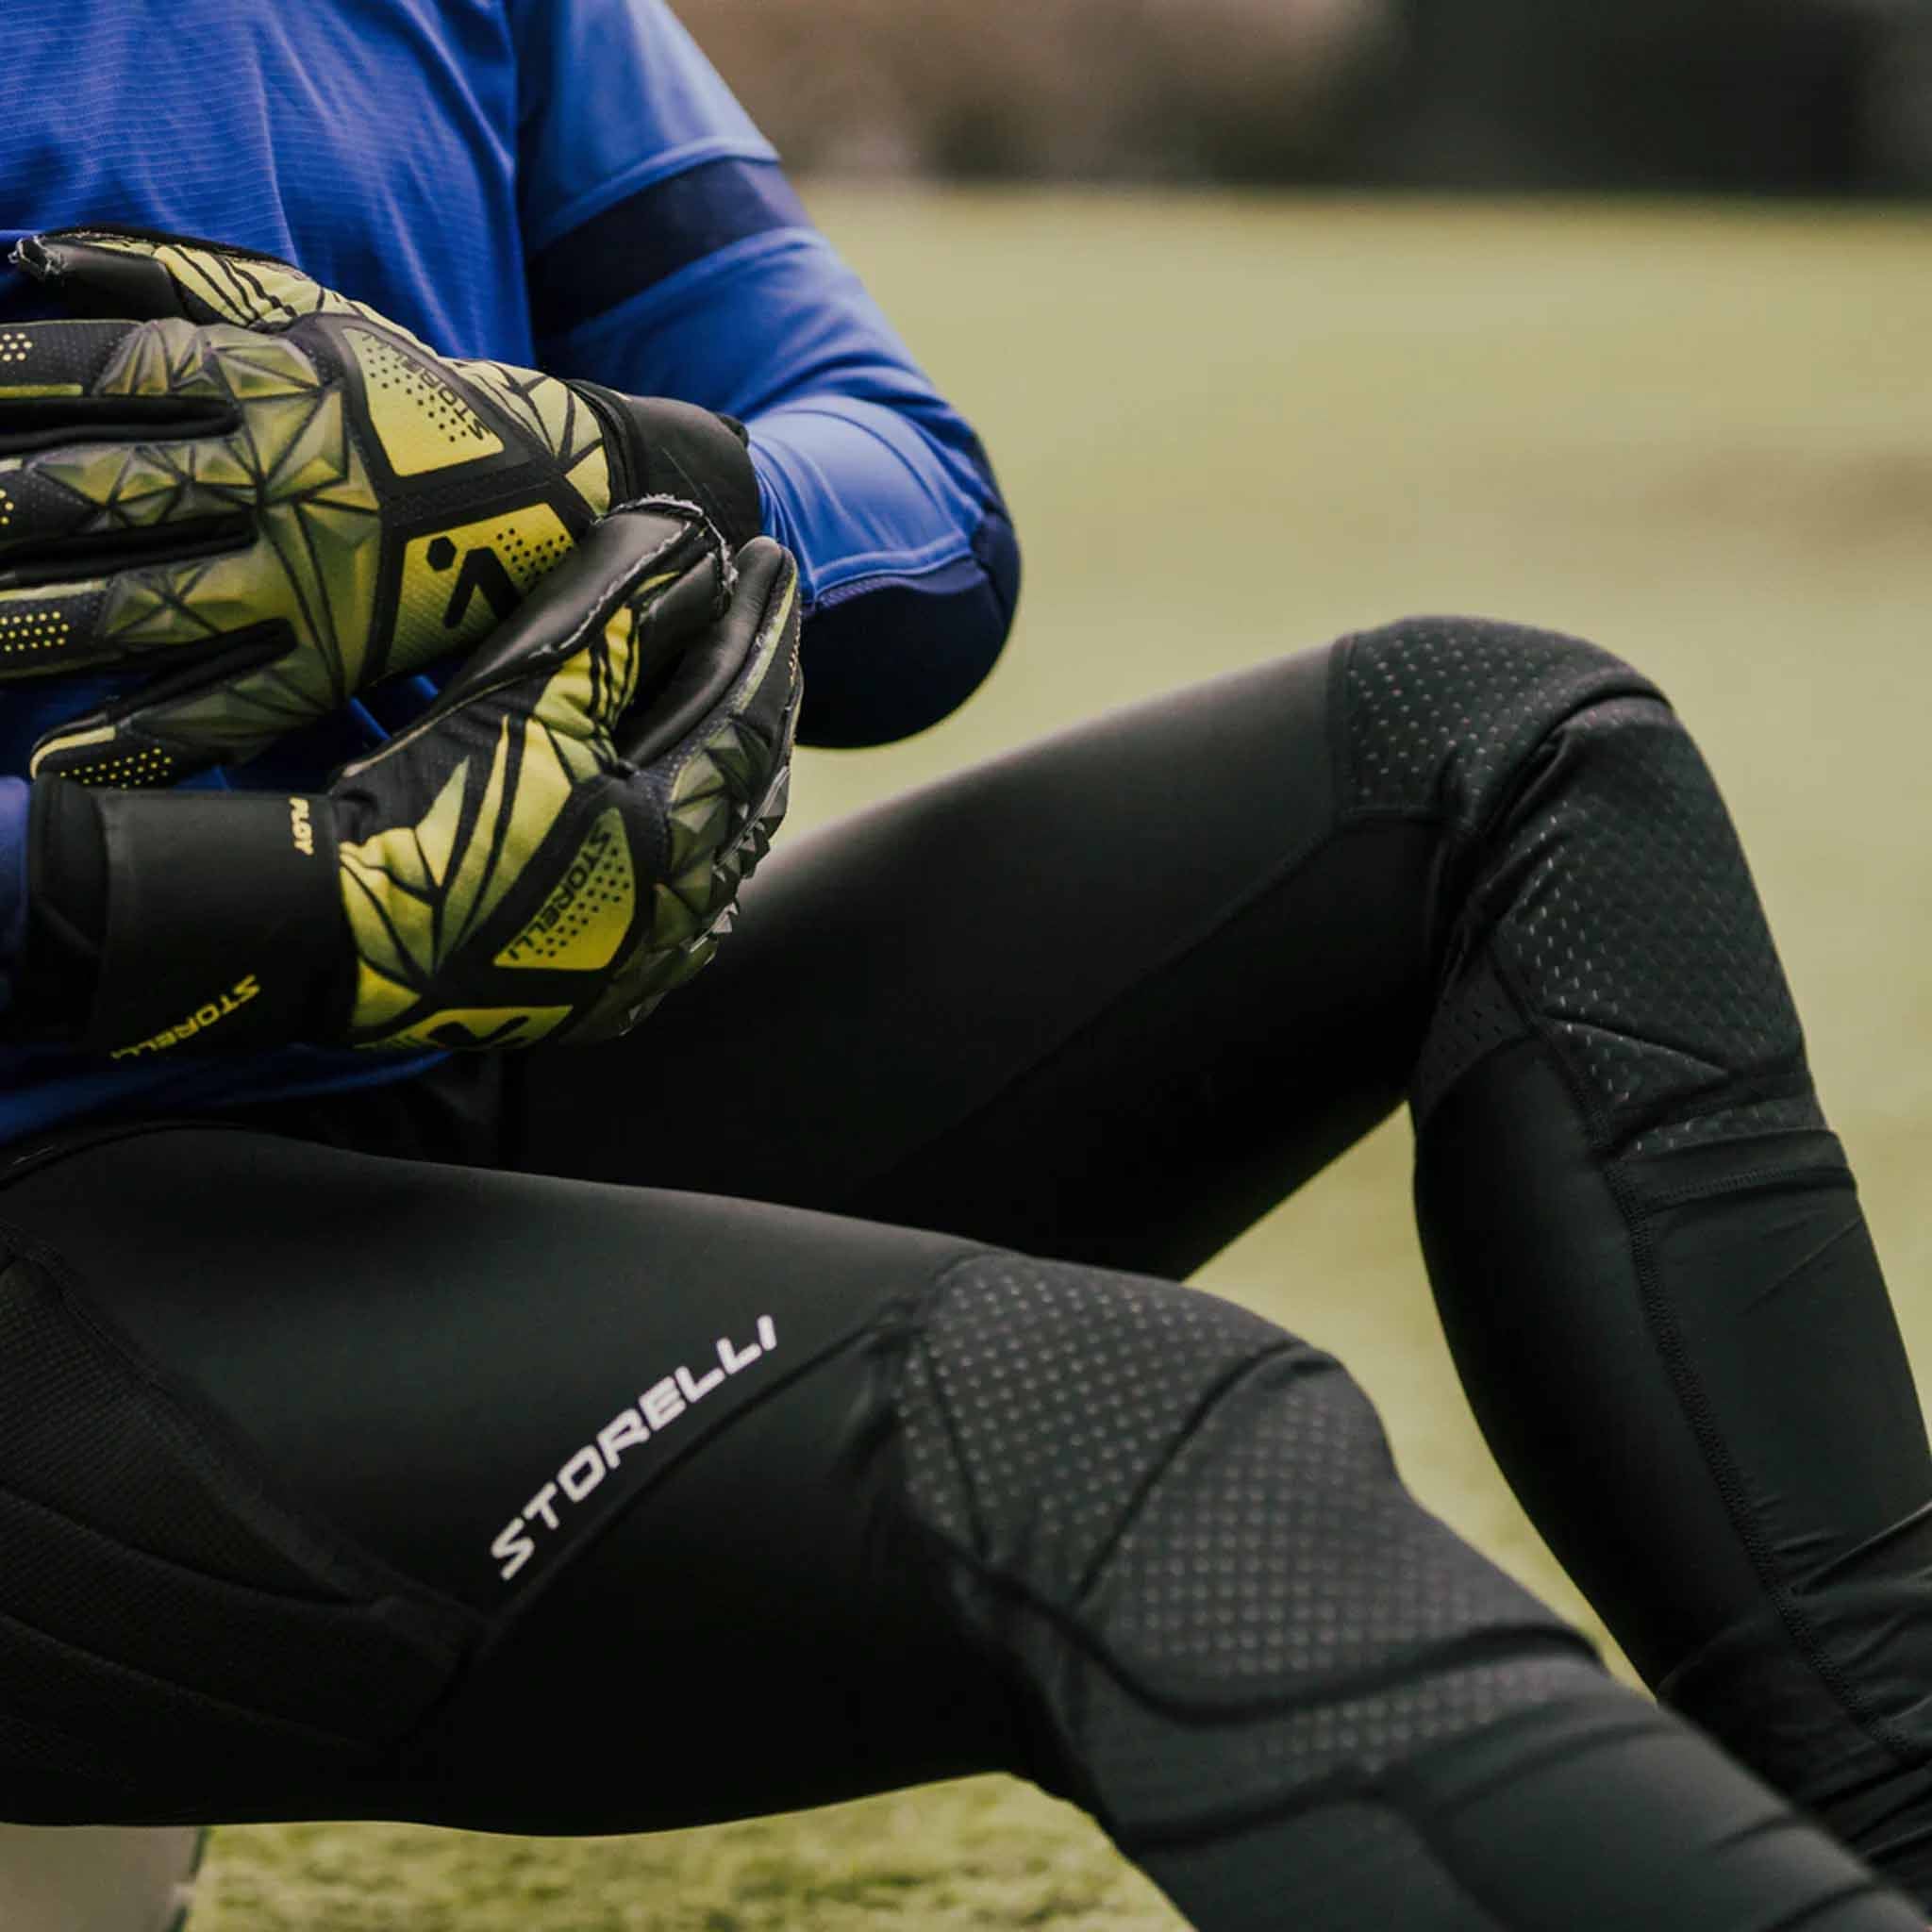 Storelli GK Leggings for women goalkeepers – Ultimate Protection – Soccer  Sport Fitness